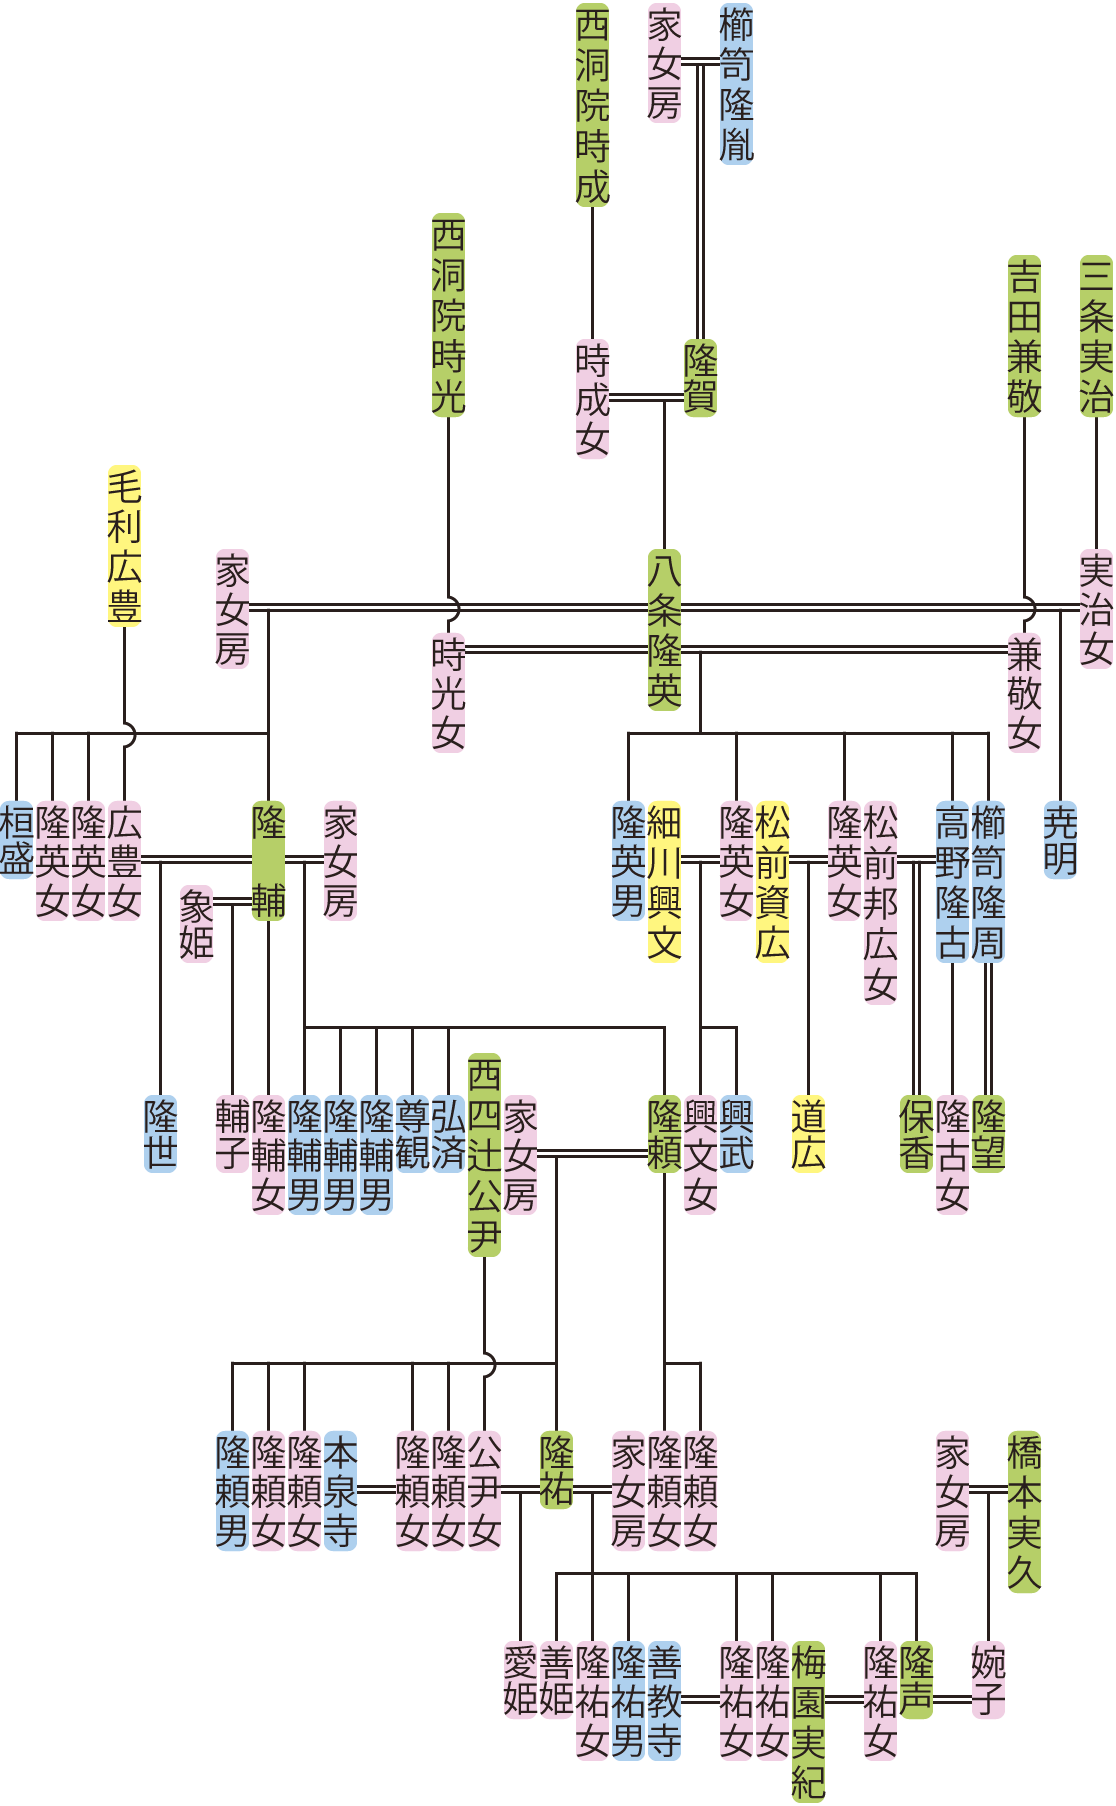 八条隆英～隆声の系図